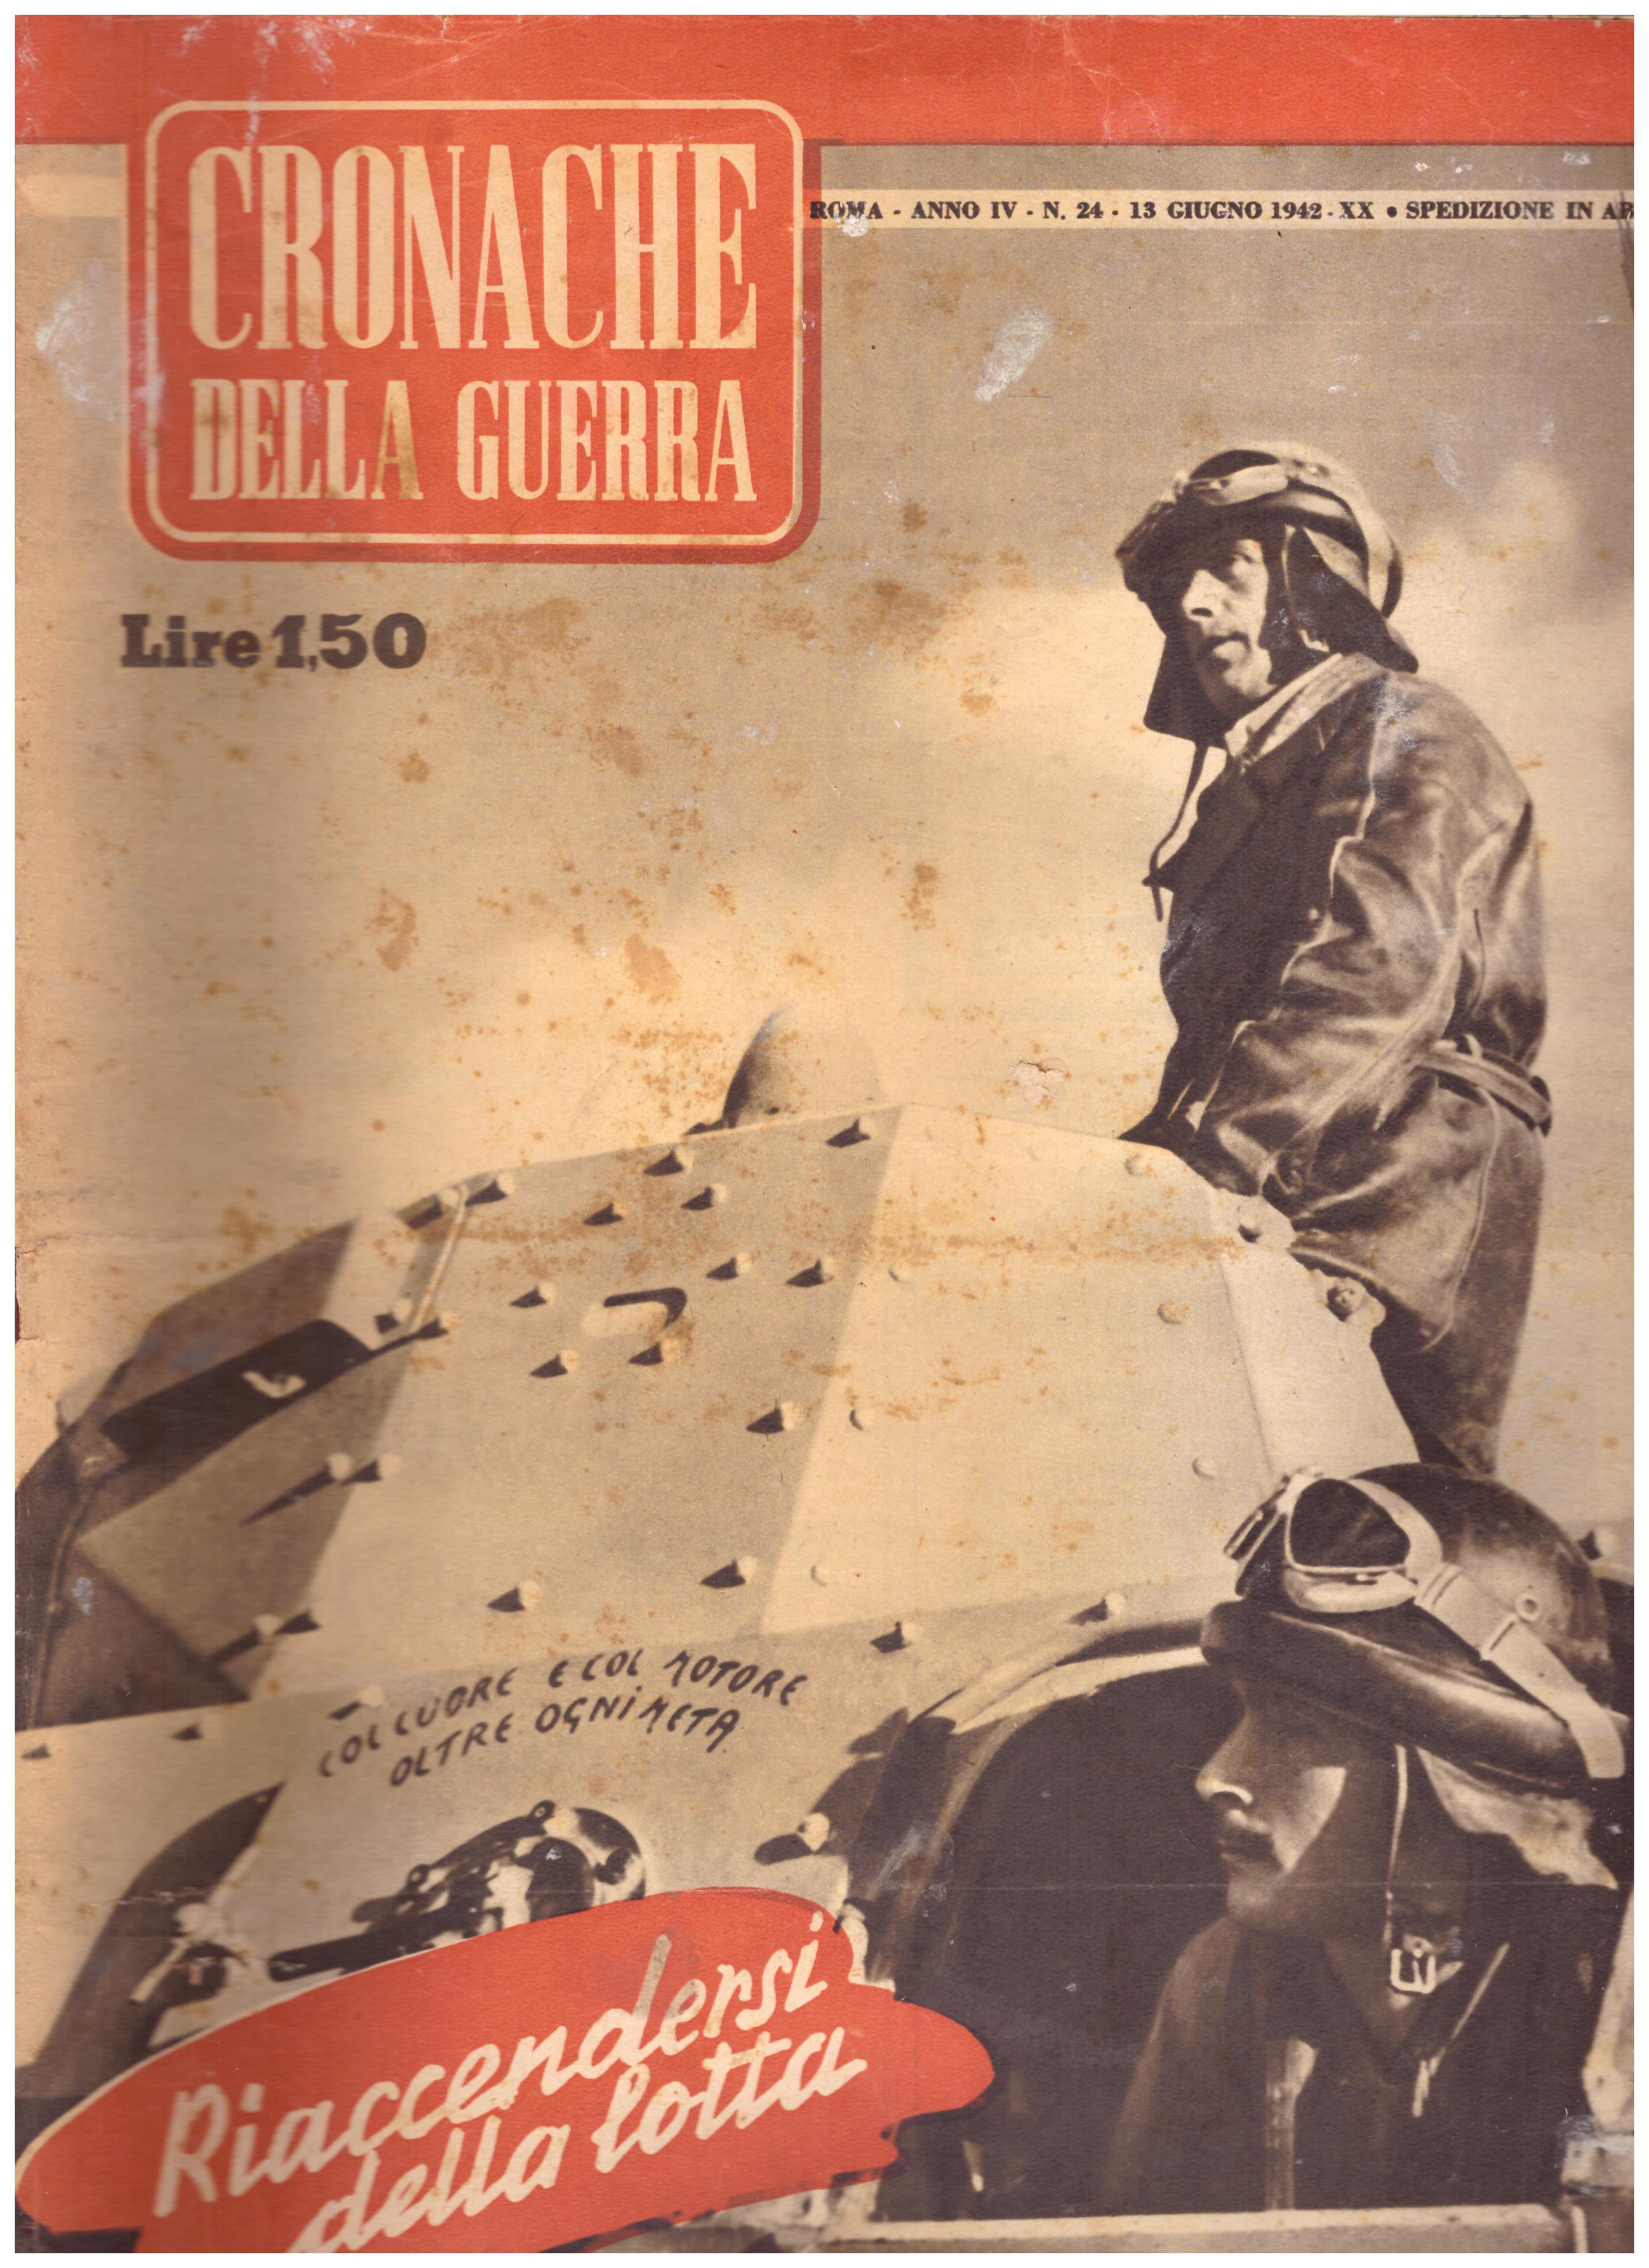 Titolo: Cronache della guerra, Roma Anno IV N.24 13 giugno 1942  Autore : AA.VV.   Editore: Tumminelli editore Roma